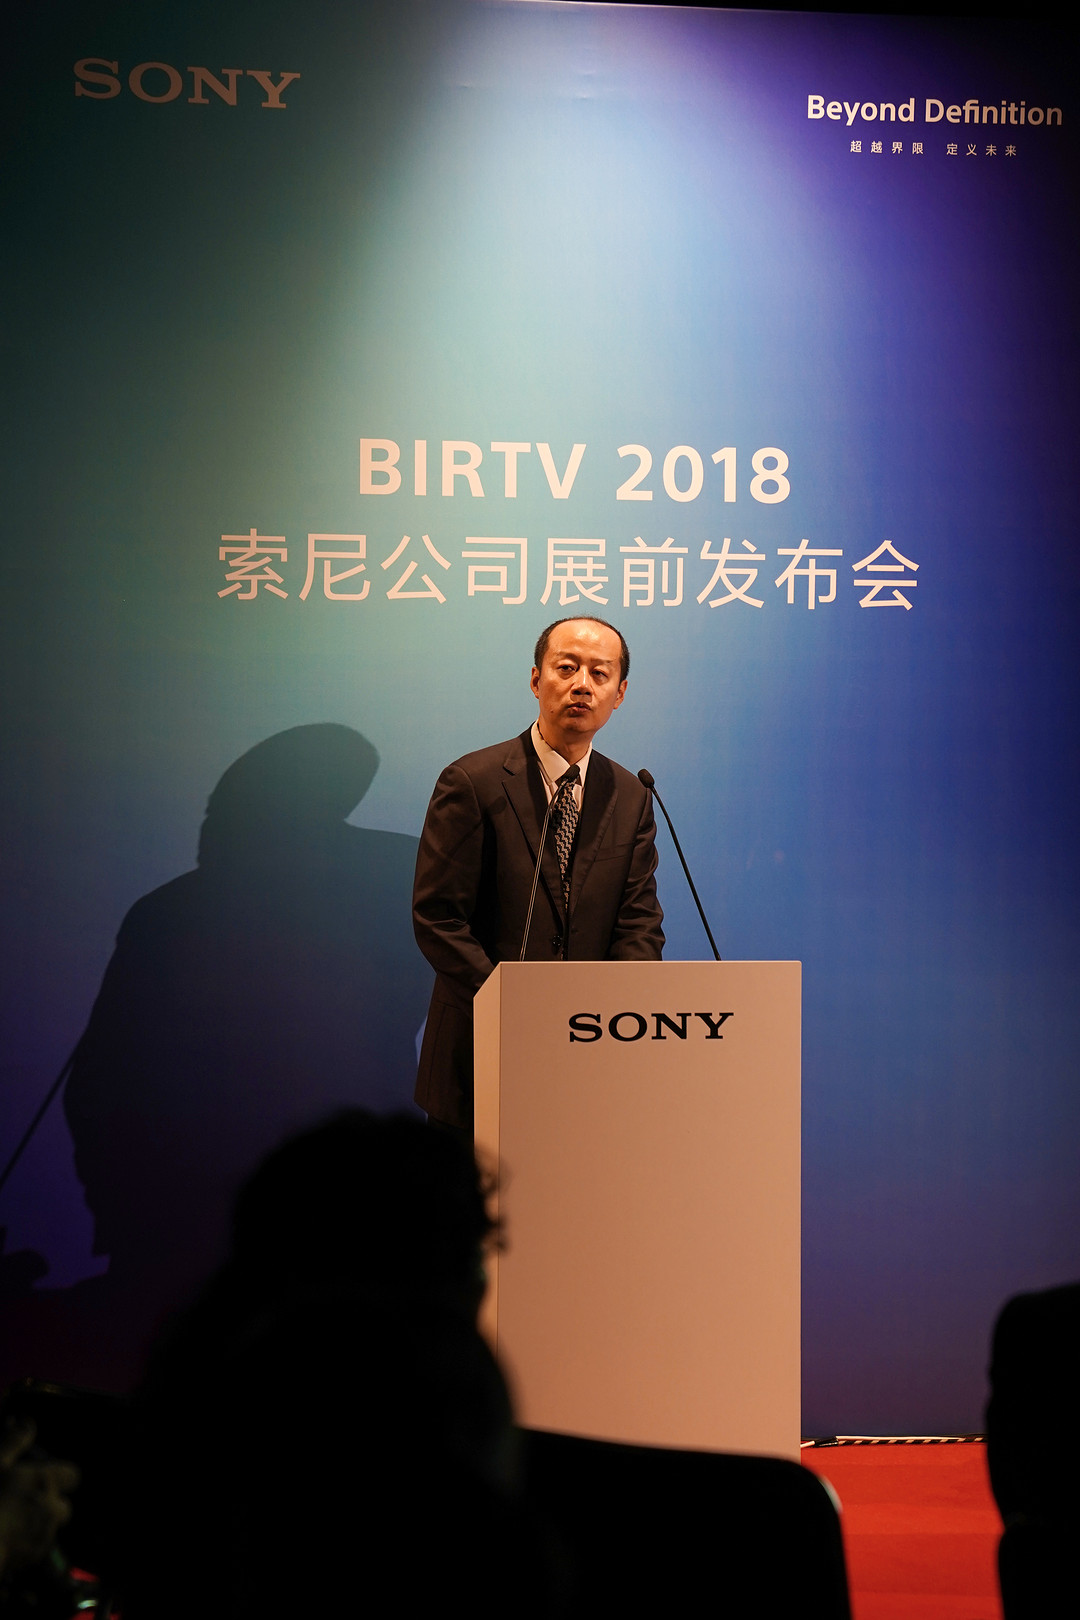 索尼将携8K、HDR、IP Live、黑彩晶等前沿技术亮相BIRTV2018展会